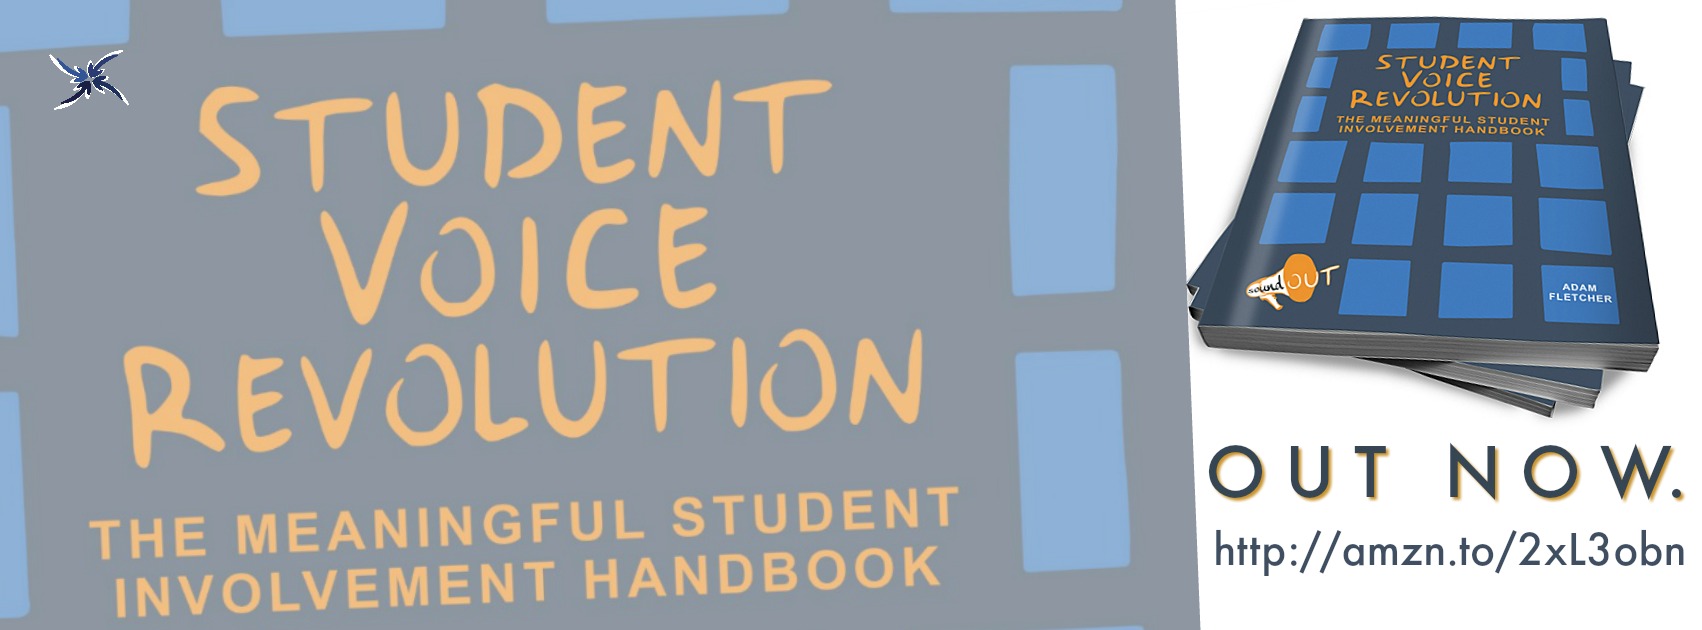 Student Voice Revolution by Adam Fletcher ad 1